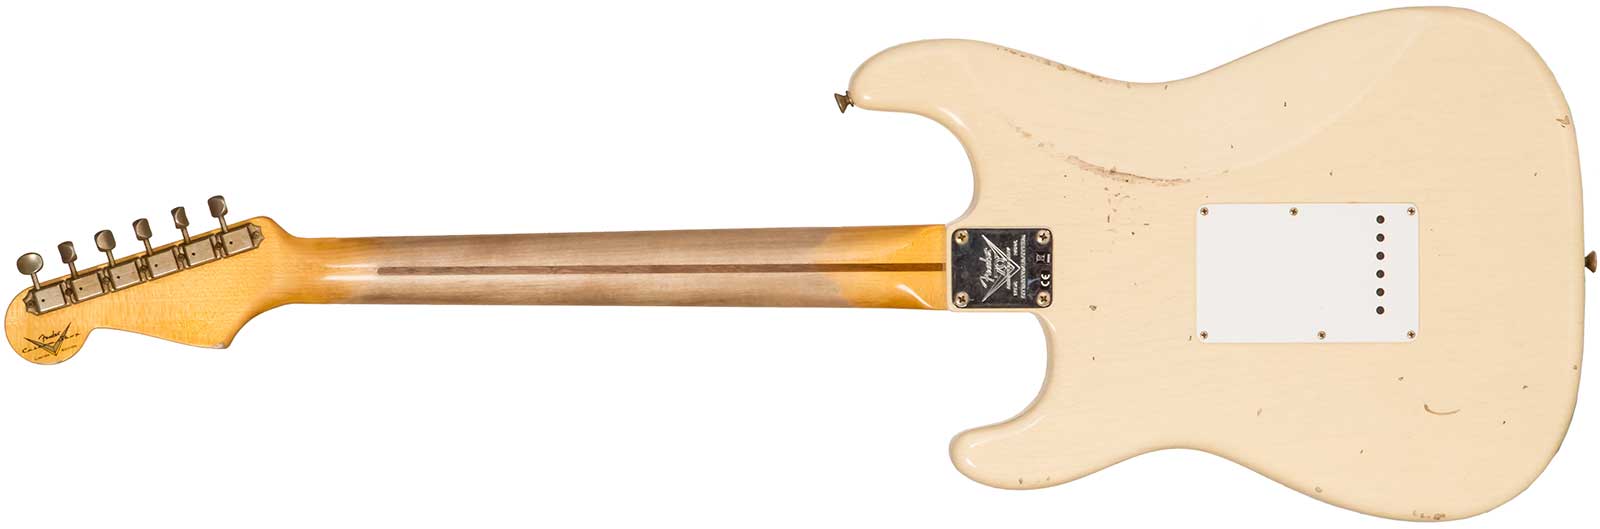 Fender Custom Shop Strat 1954 70th Anniv. 3s Trem Mn #xn4382 - Relic Vintage Blonde - Guitare Électrique Forme Str - Variation 1